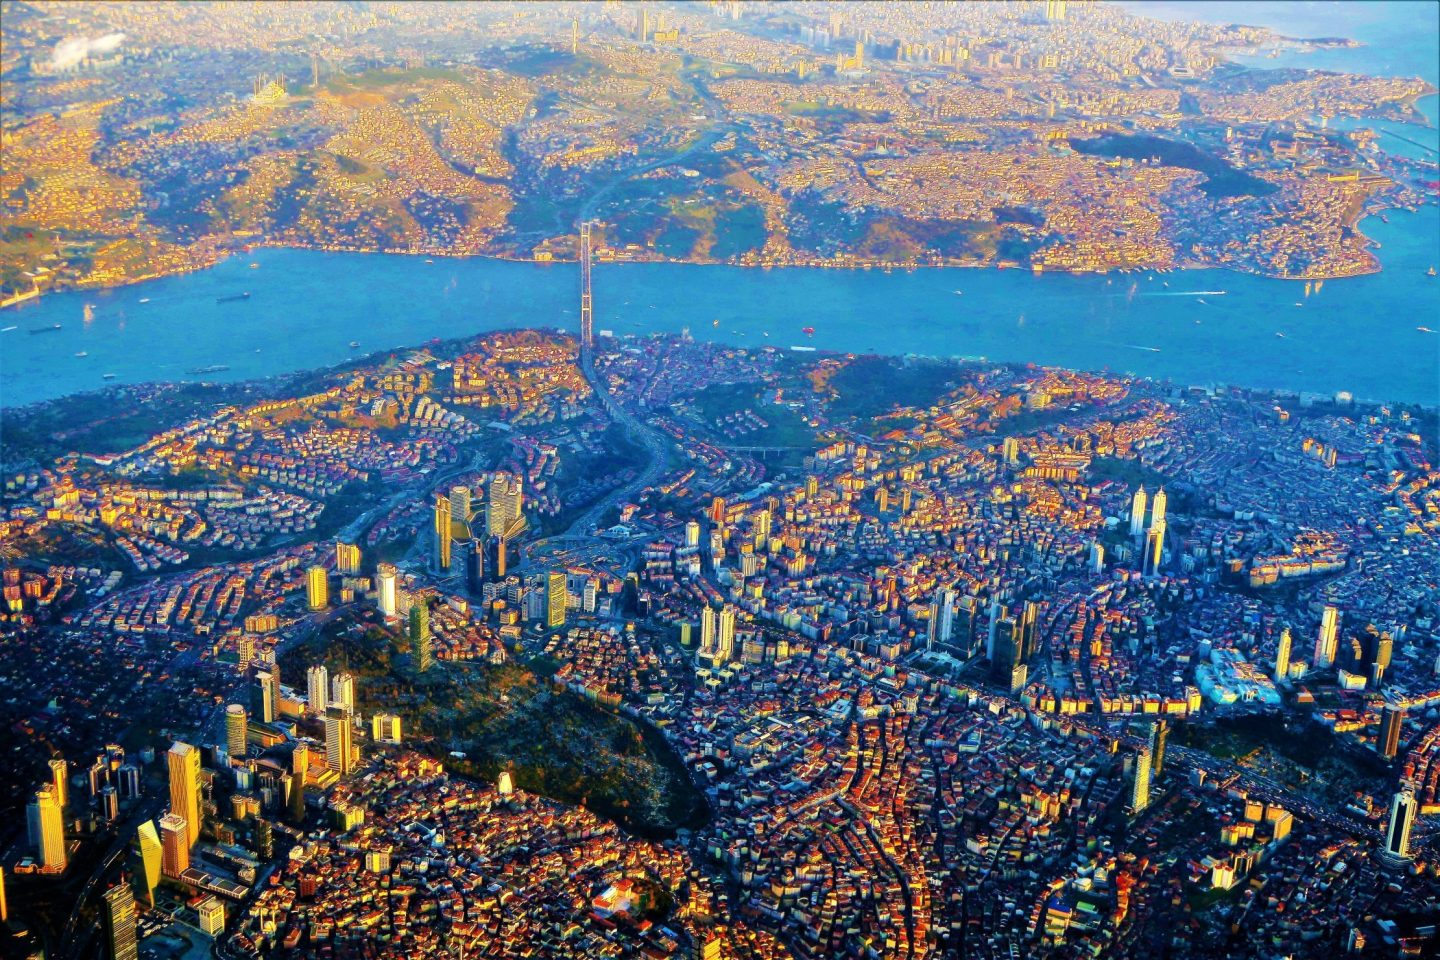 La vista en la parte europea y asiática de Estambul con el Bósforo entre ellos